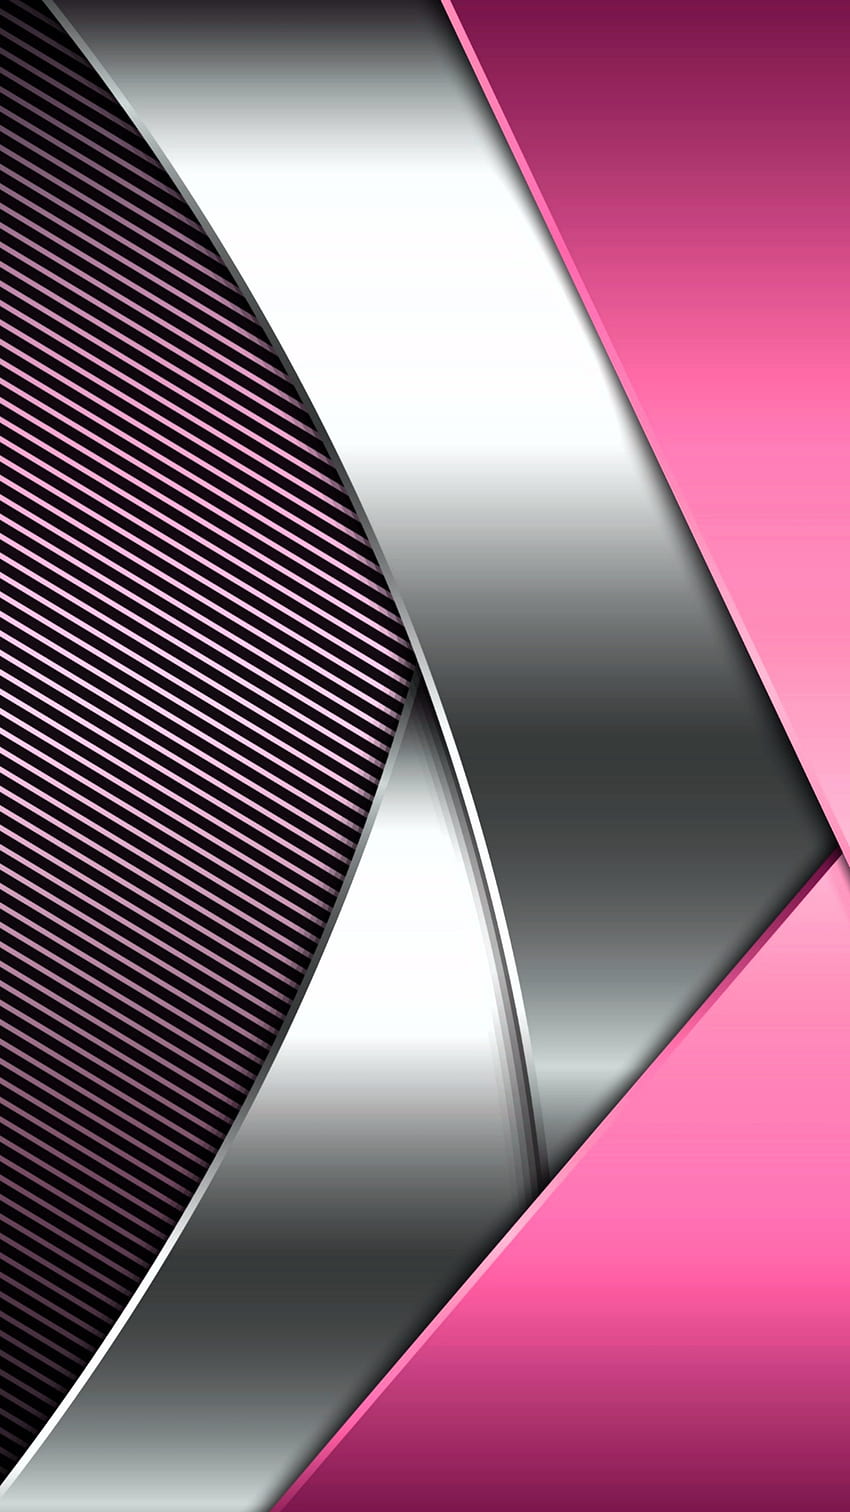 シルバー ピンク amoled 3 d、素材、ネオン、デザイン、幾何学的、レイヤー、パターン、抽象、ライン、色合い、メッシュ HD電話の壁紙